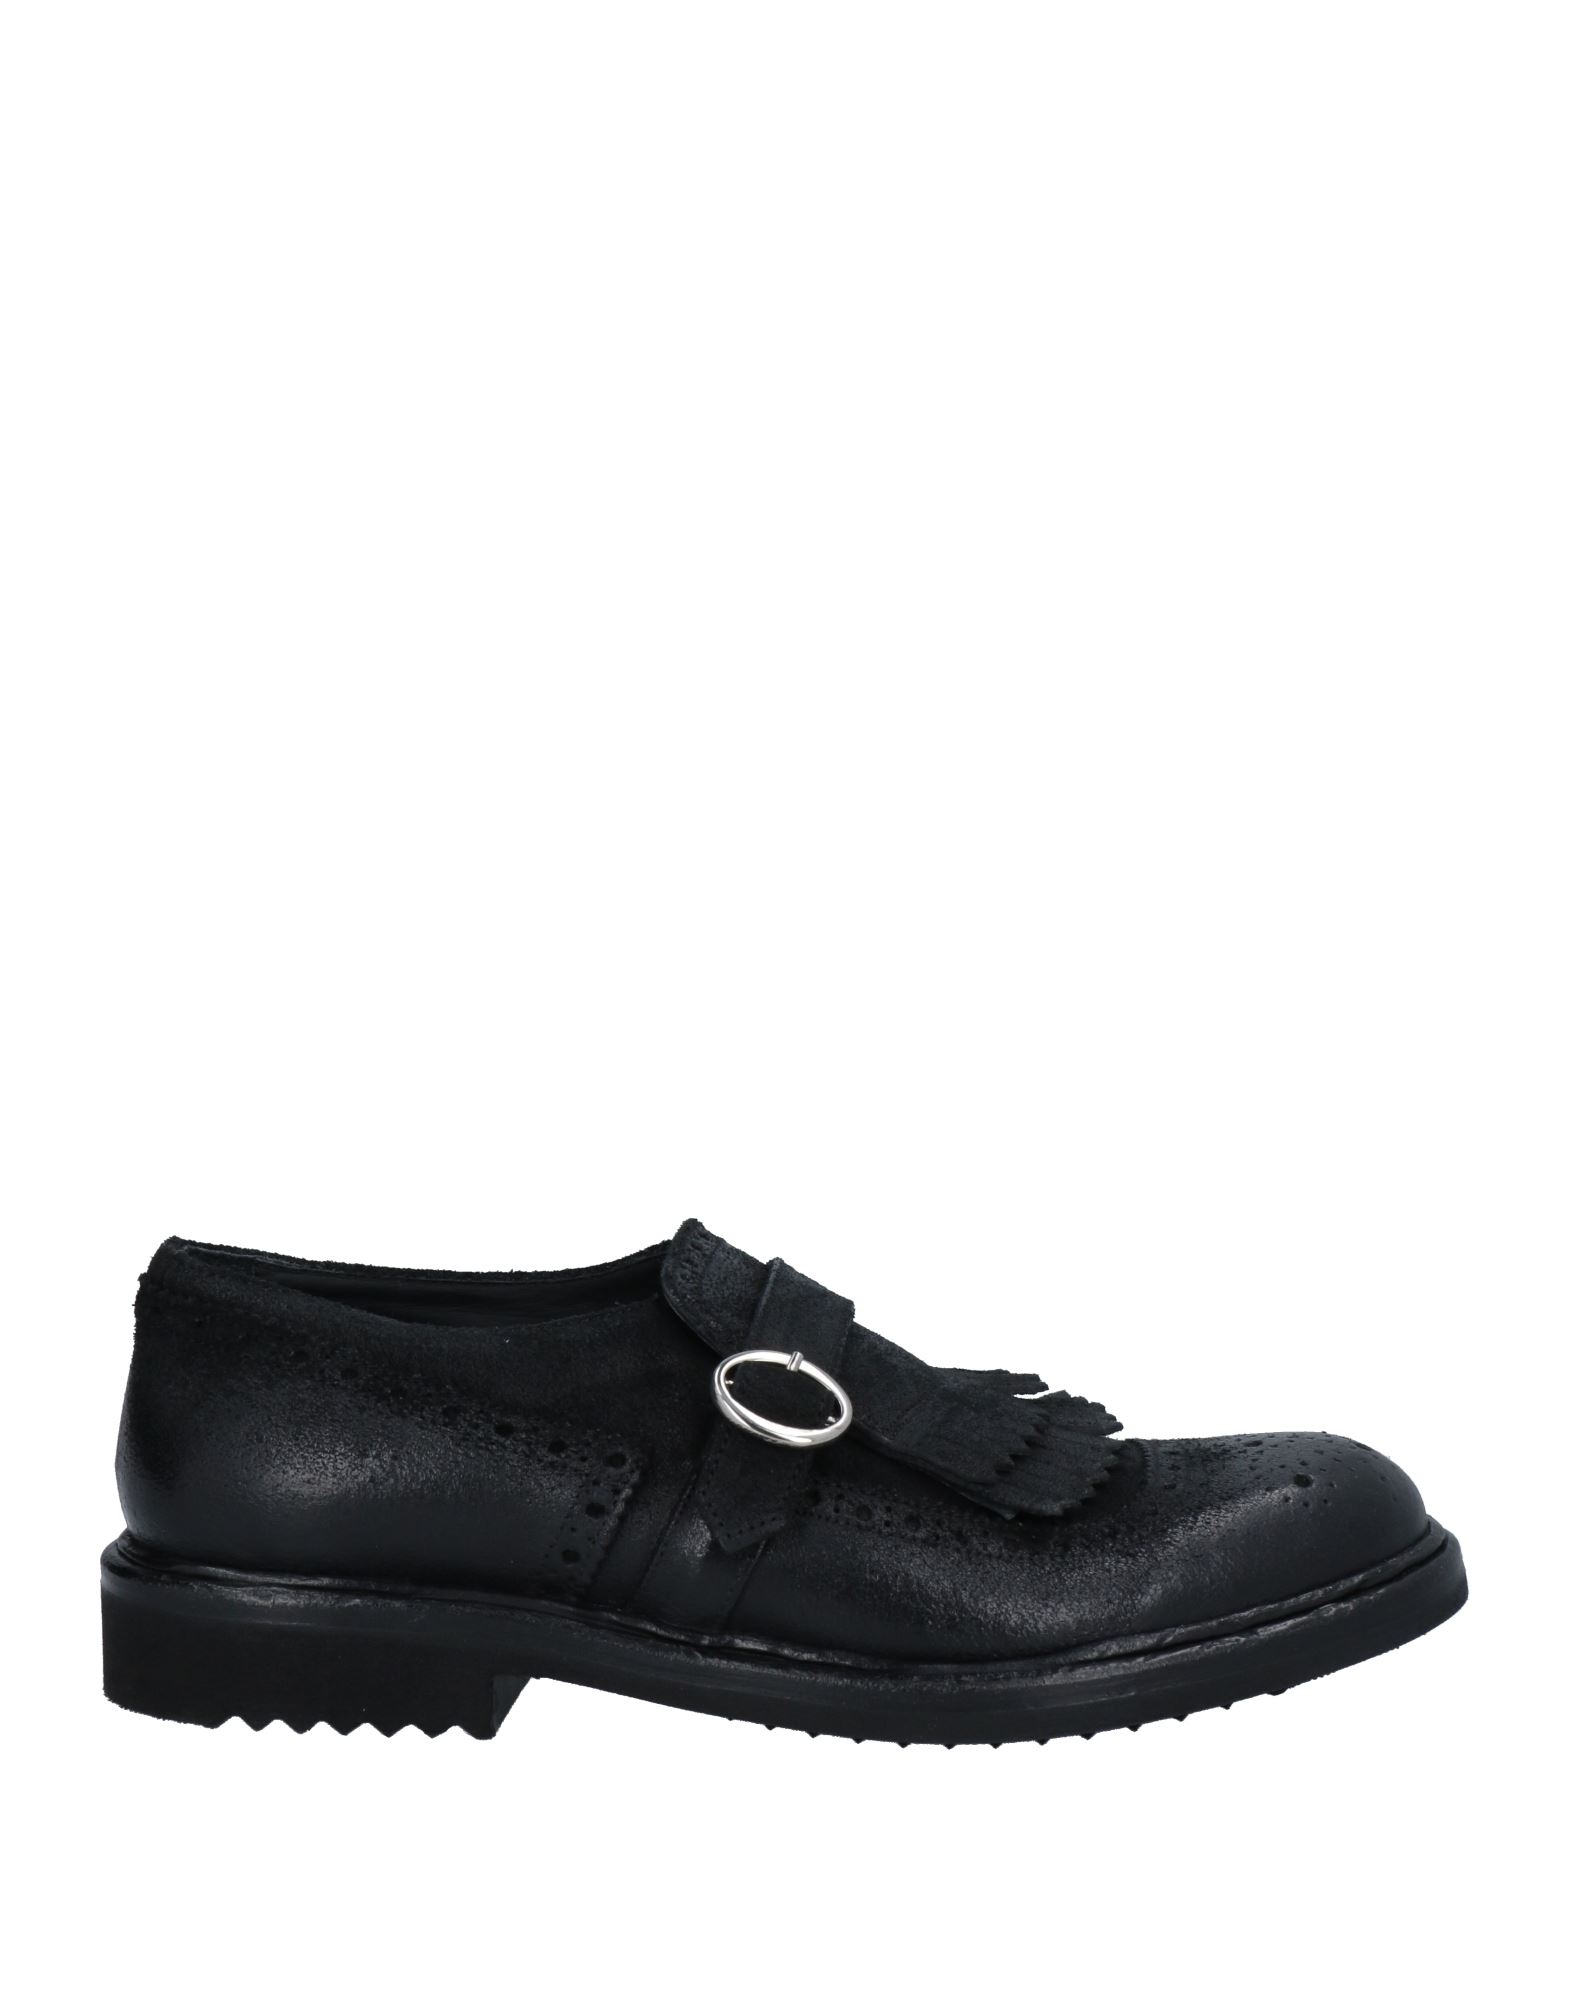 Marechiaro 1962 Loafers In Black